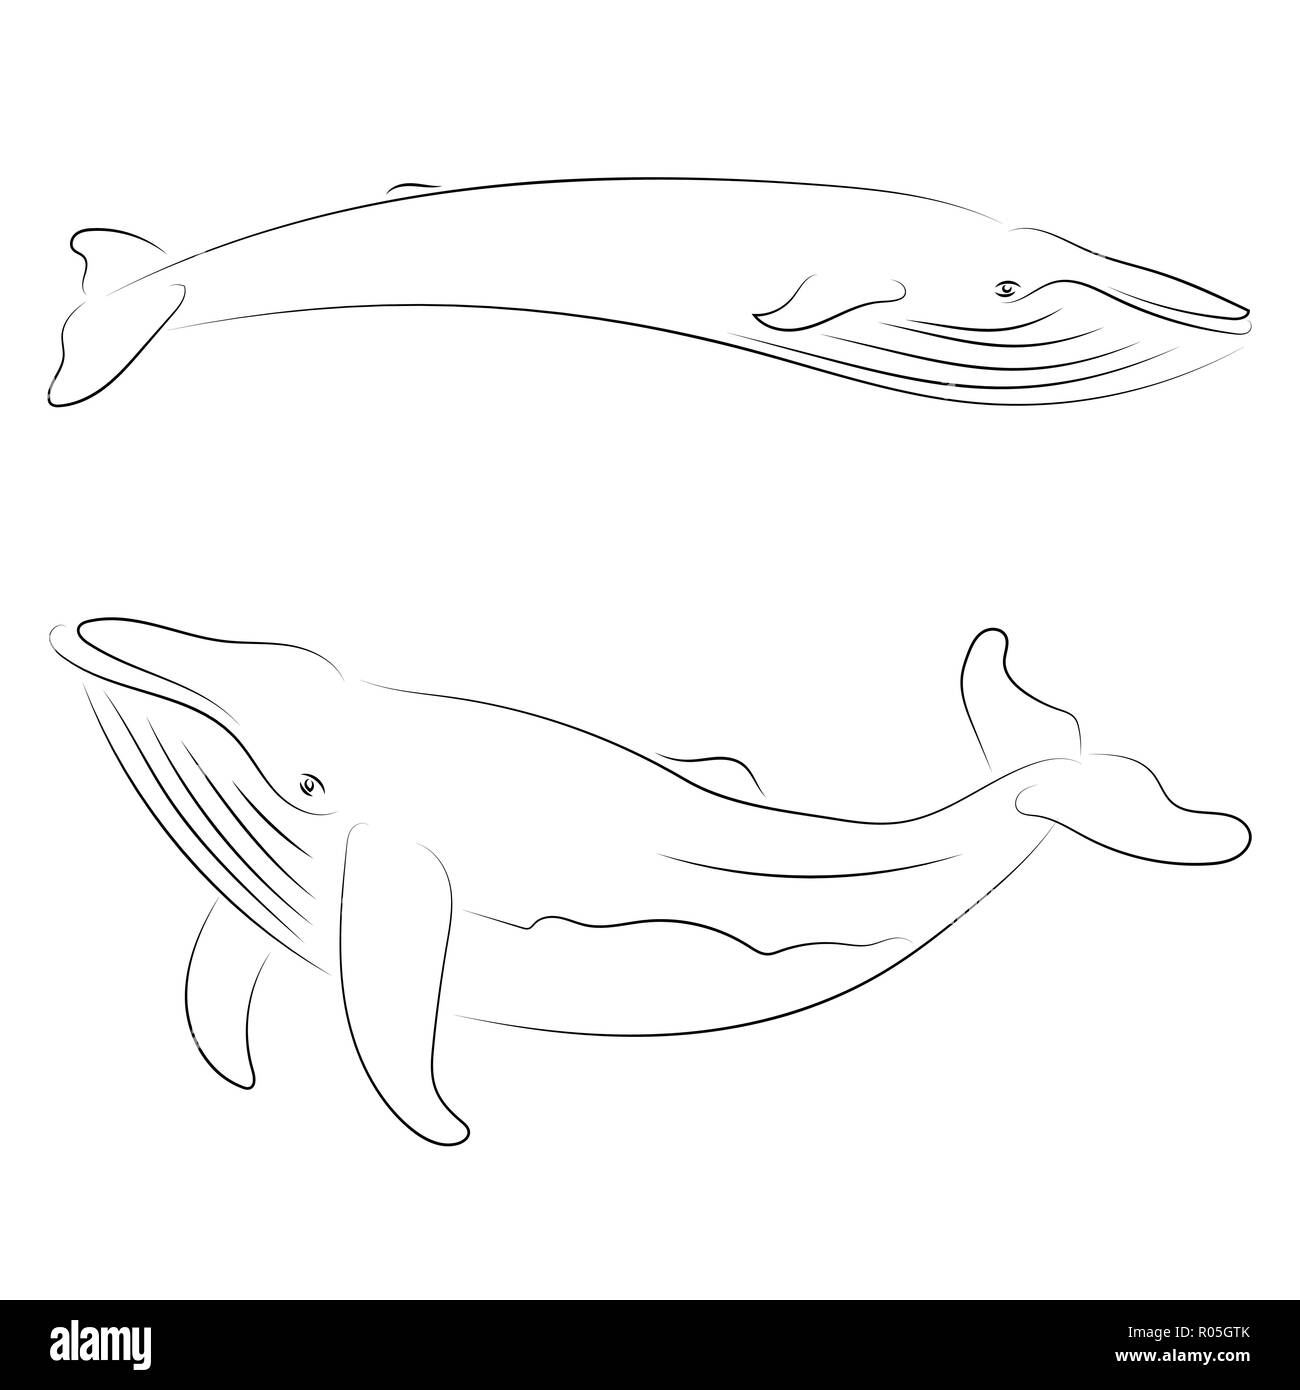 La Ligne Noire Sur Fond Blanc De Baleine Dessin A La Main Graphique Style Croquis Animal Image Vectorielle Stock Alamy